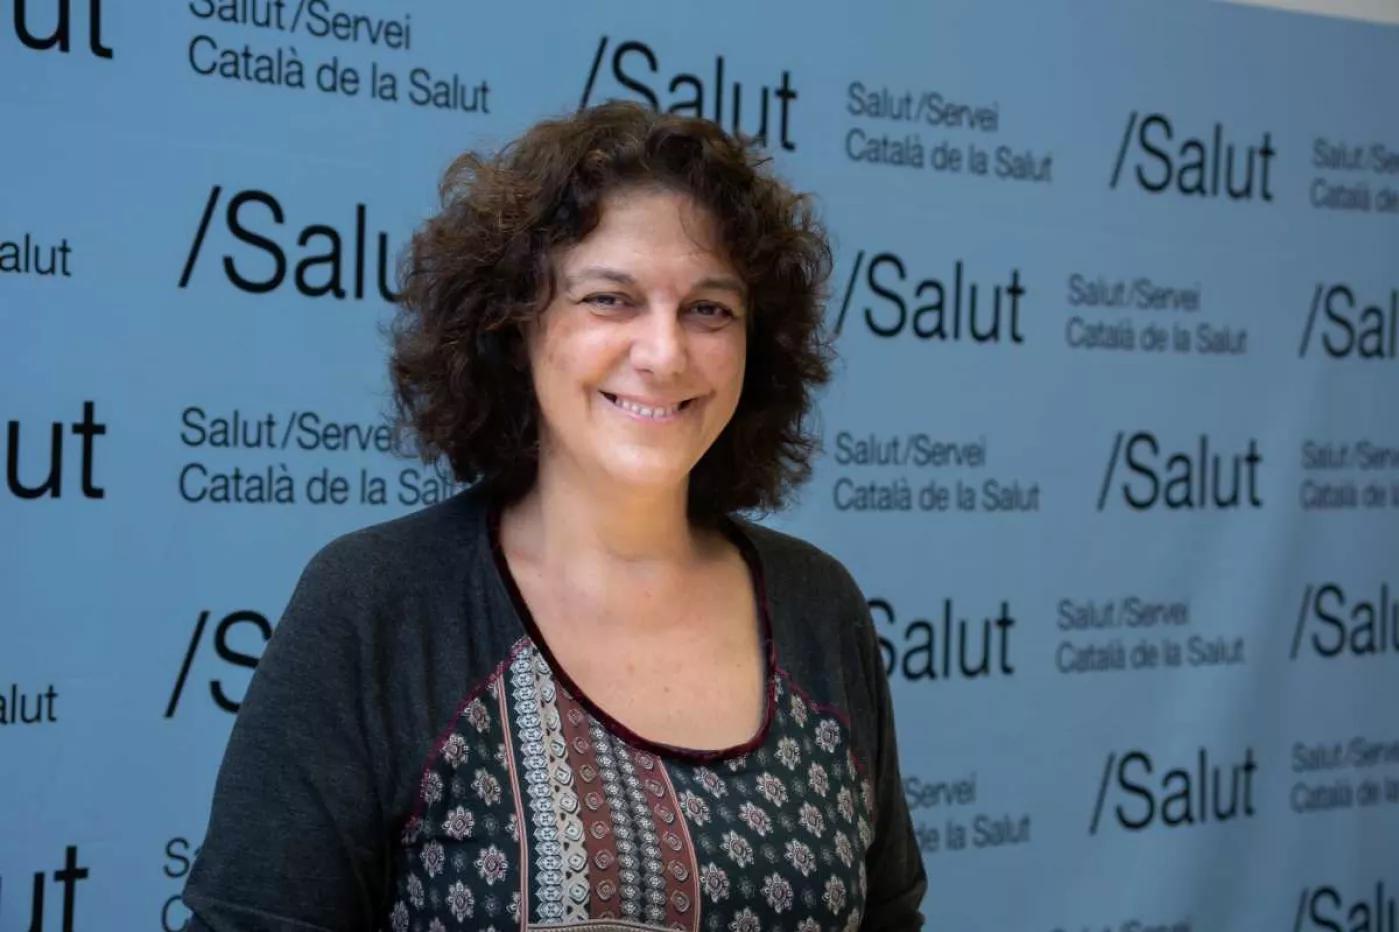 La directora del CatSalut, Gemma Craywinckel, refuerza la capacidad de la carpeta on line del usuario Mi Salud (La meva salut). Foto: JAUME COSIALLS